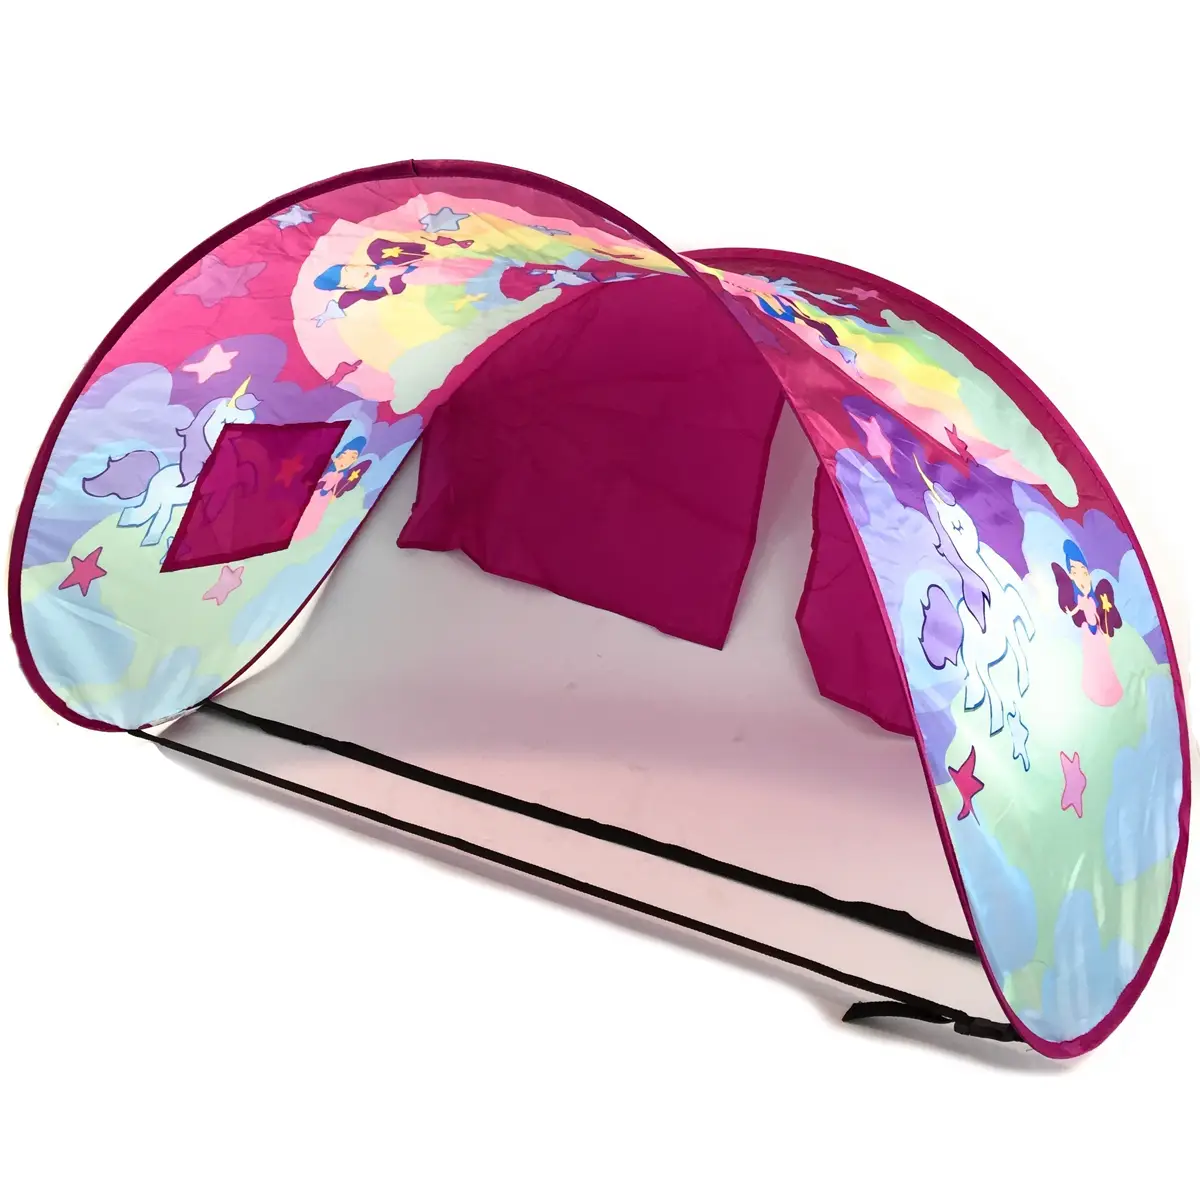 Sleepfun Tent庐 Fairy Dream - Betthimmel